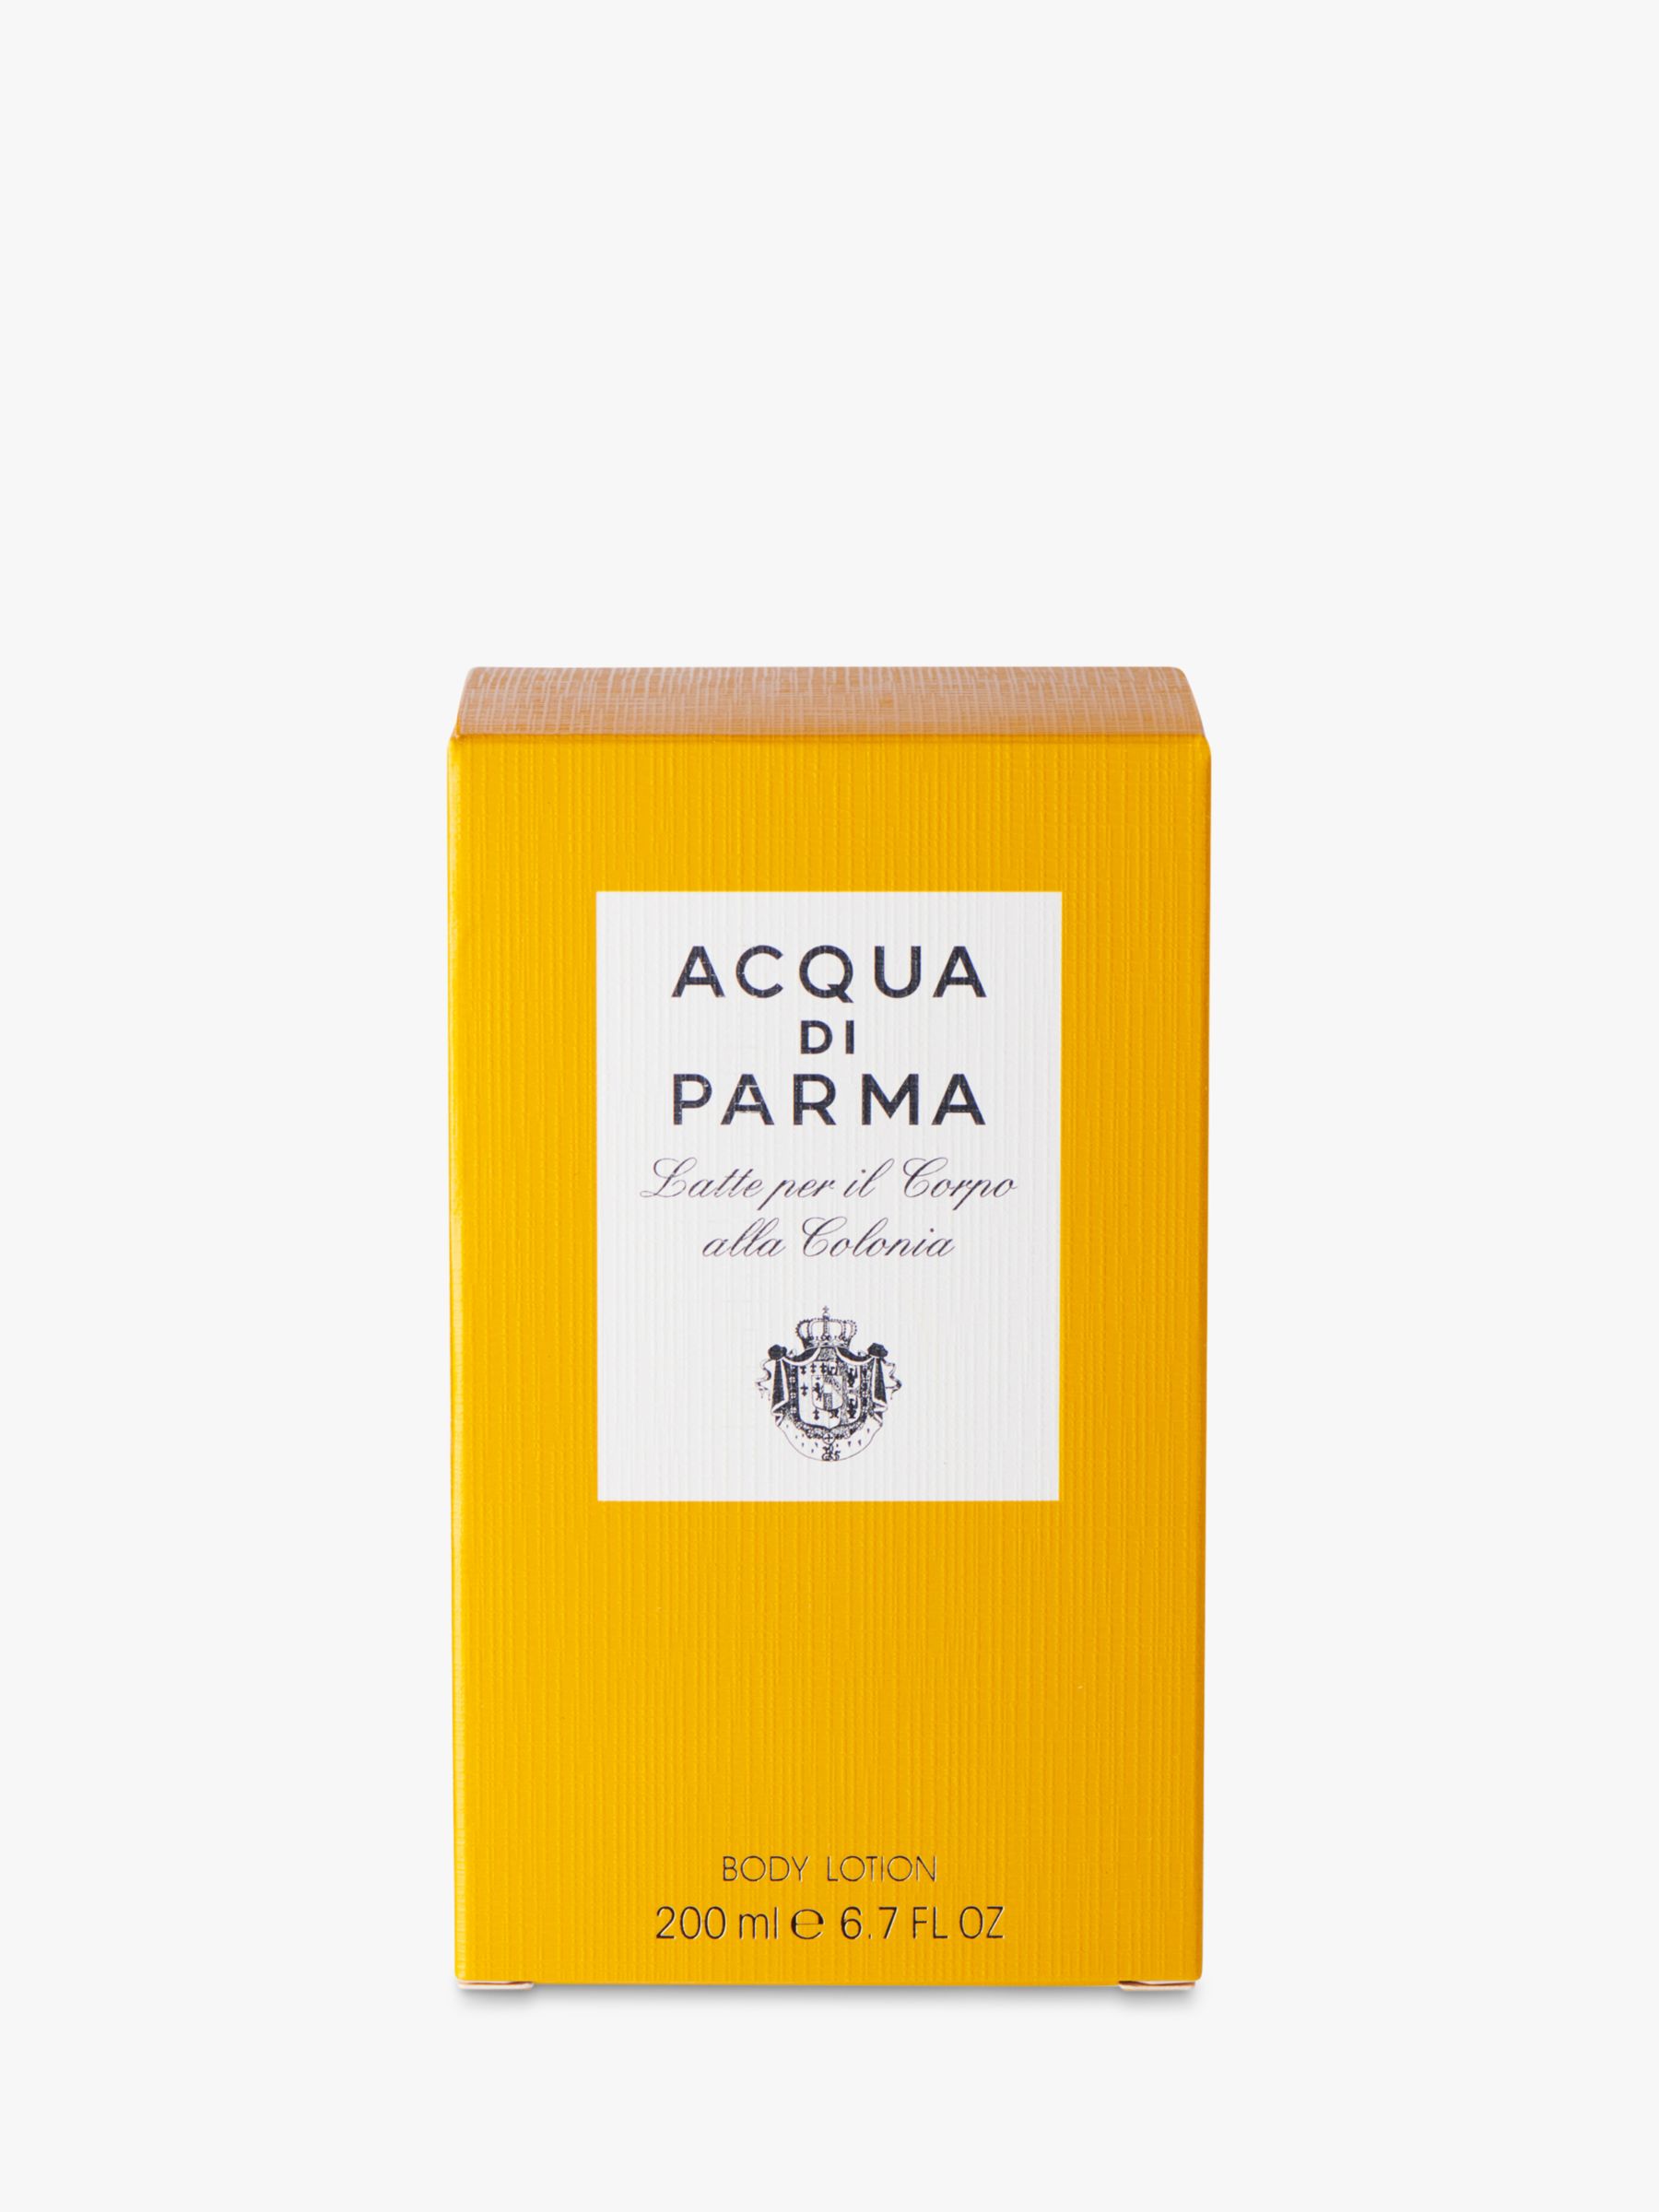 Body Lotion Acqua di Parma Latte per il Corpo alla Colonia and Soap Bar New